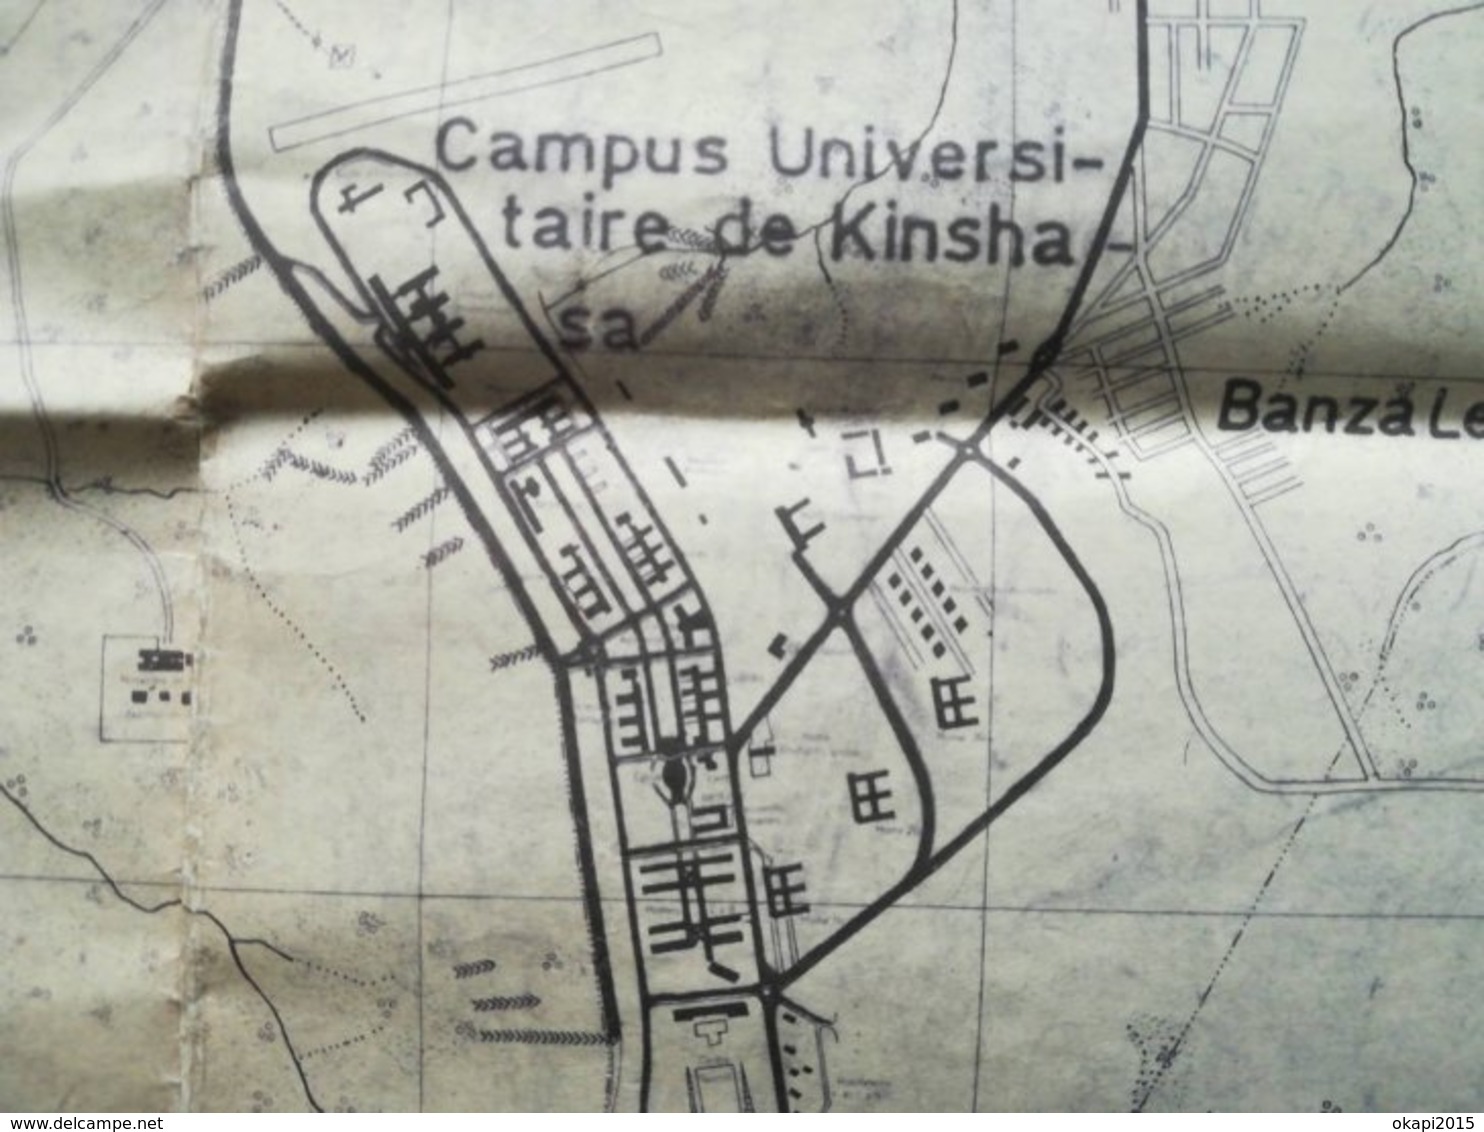 Vieux plan de la ville de Kinshasa ex - Léopoldville   Congo Zaïre ancienne colonie Belgique vieux papiers cartes